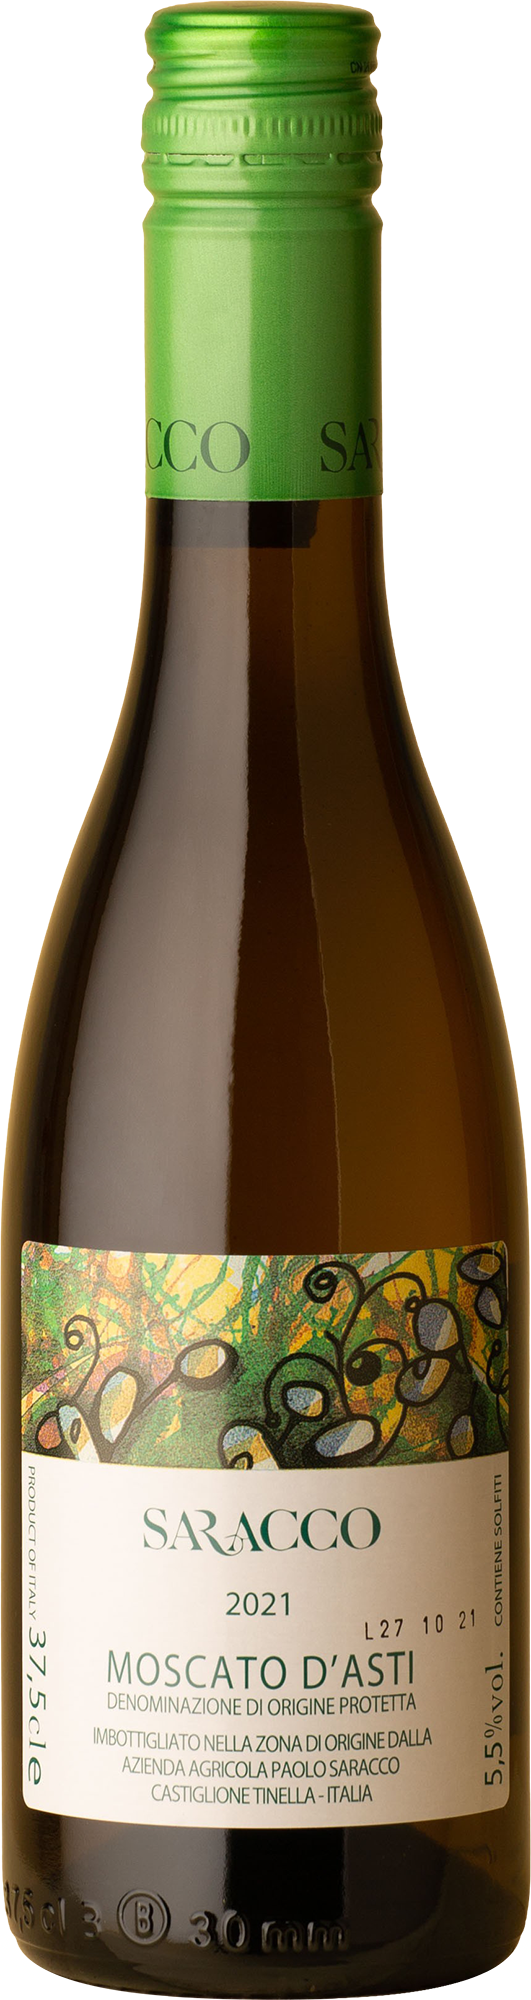 Saracco - Moscato d'Asti 375mL Moscato Bianco 2021 White Wine